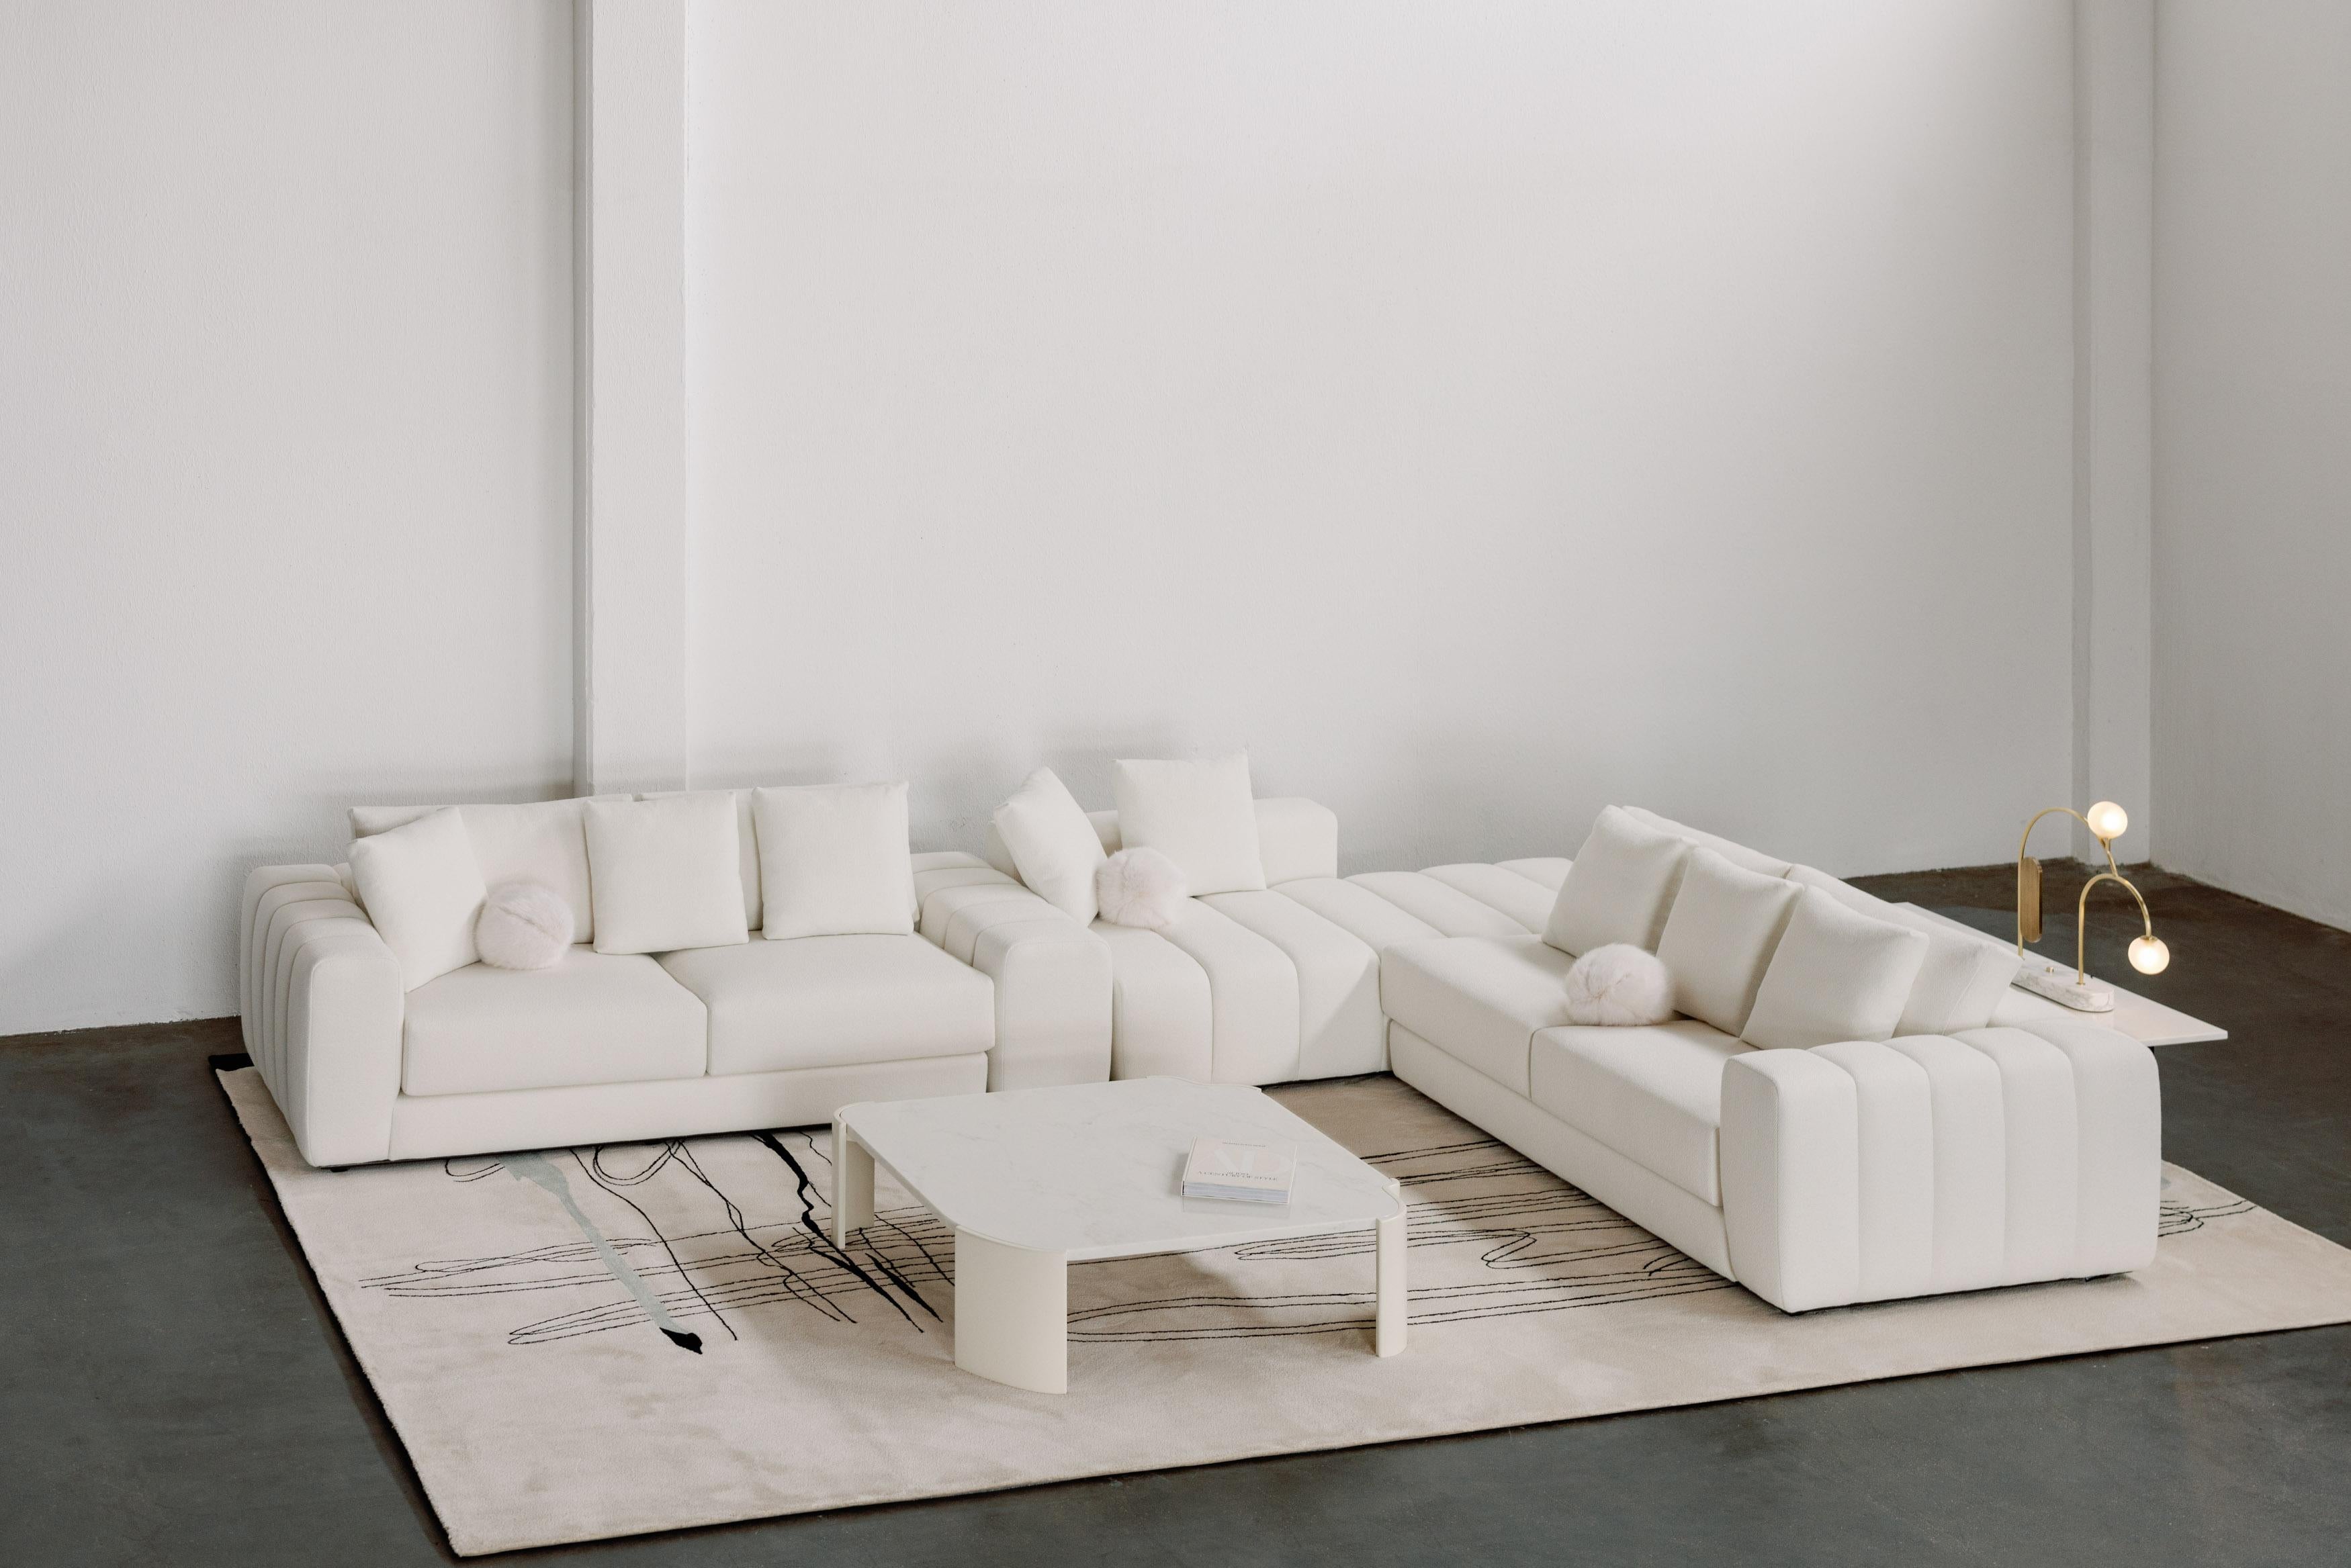 Coast Mudular Sofa, Contemporary Collection, Handcrafted in Portugal - Europe by Greenapple.

Le canapé modulable By Design Modern/One a été conçu pour apporter un sentiment de calme et de paix à tous ceux qui osent se plonger dans la relaxation.